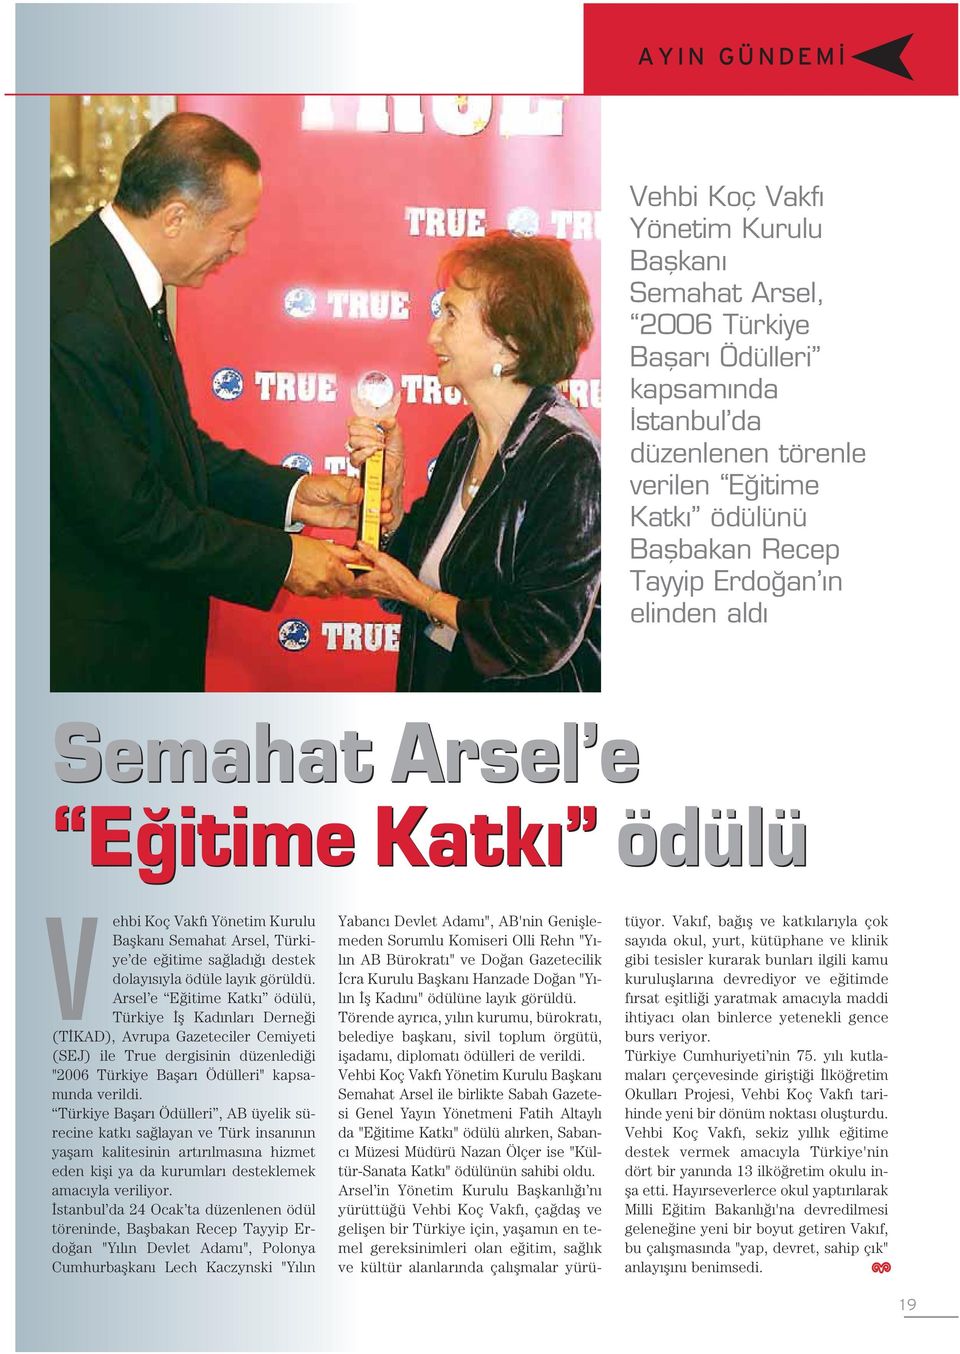 Arsel e E itime Katk ödülü, Türkiye fl Kad nlar Derne i (T KAD), Avrupa Gazeteciler Cemiyeti (SEJ) ile True dergisinin düzenledi i "2006 Türkiye Baflar Ödülleri" kapsam nda verildi.